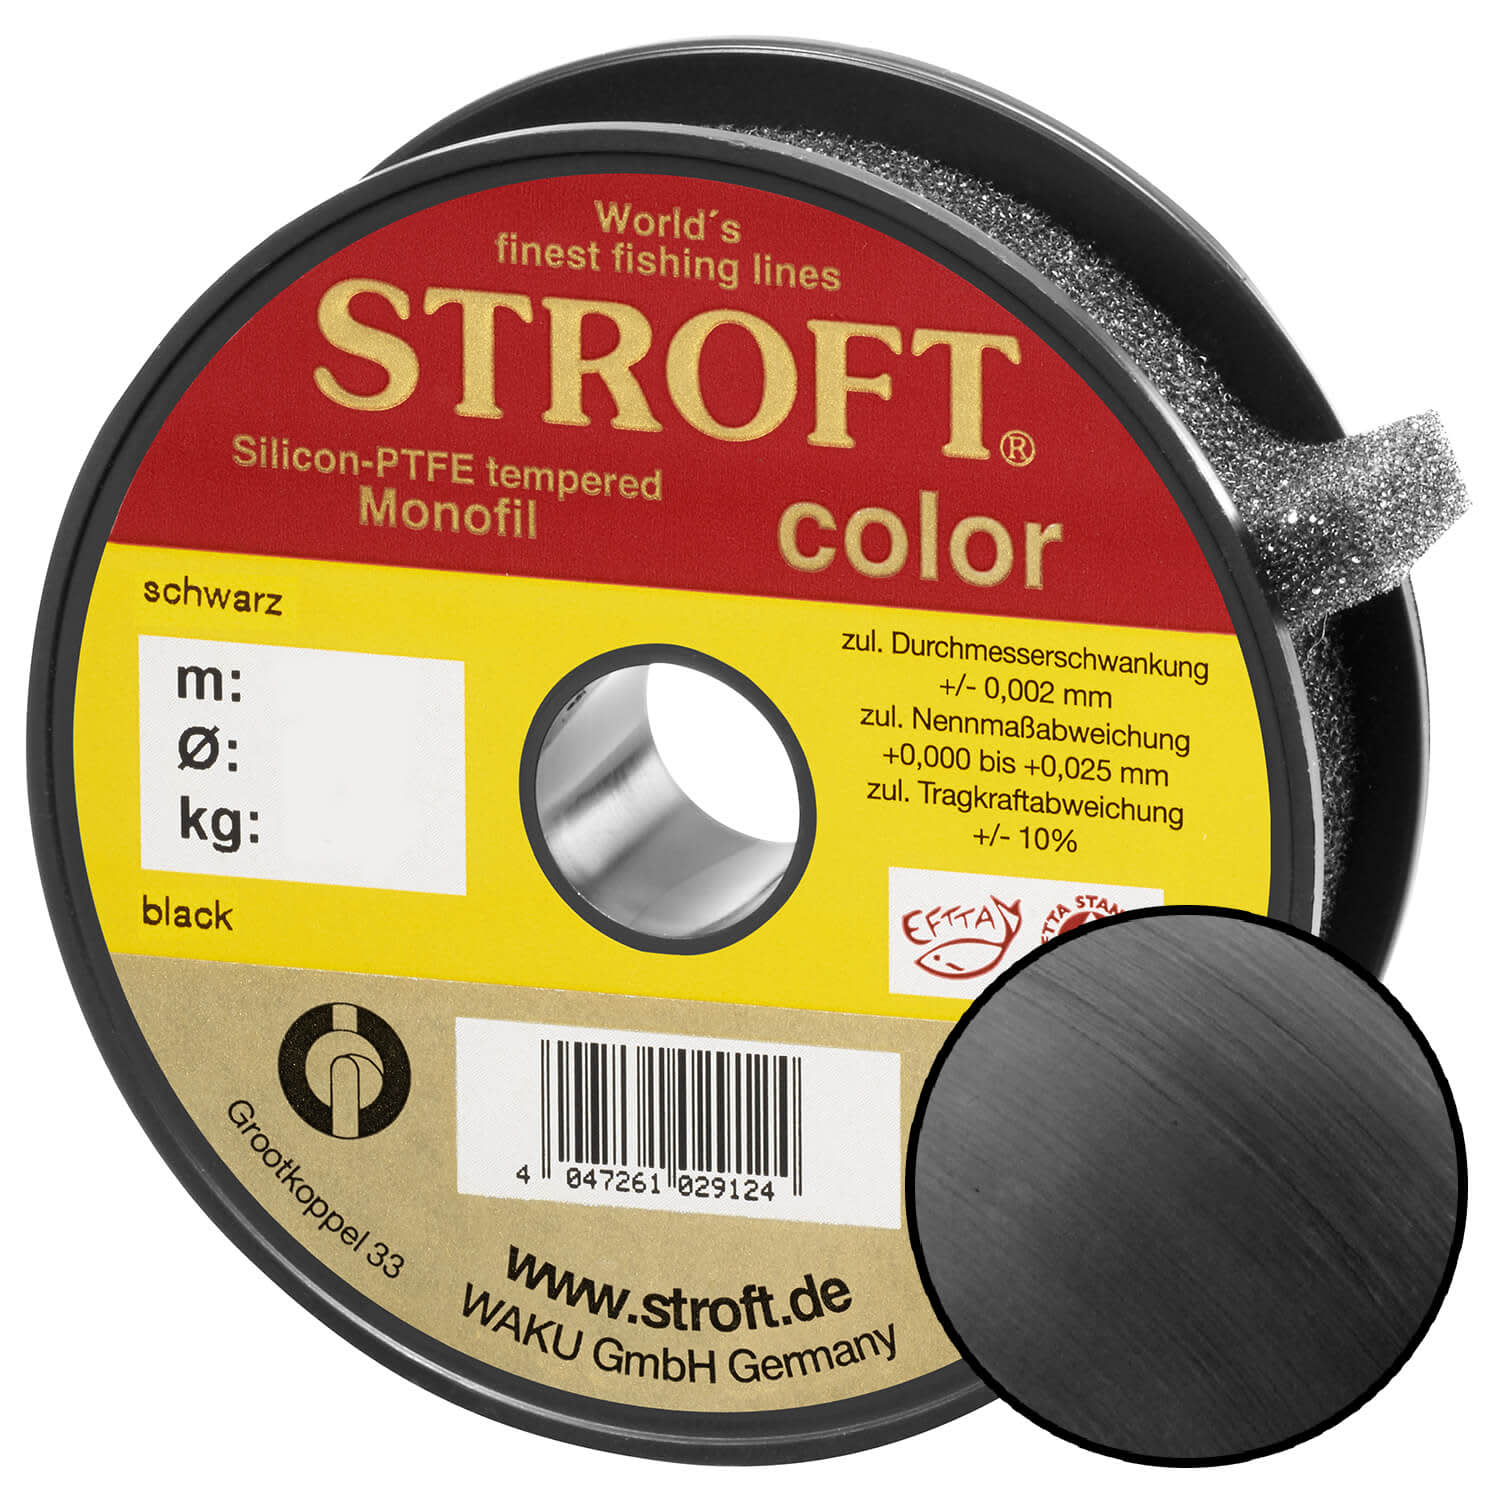 STROFT Color Monofilament Fishing Line Black 0,40mm 13,0kg